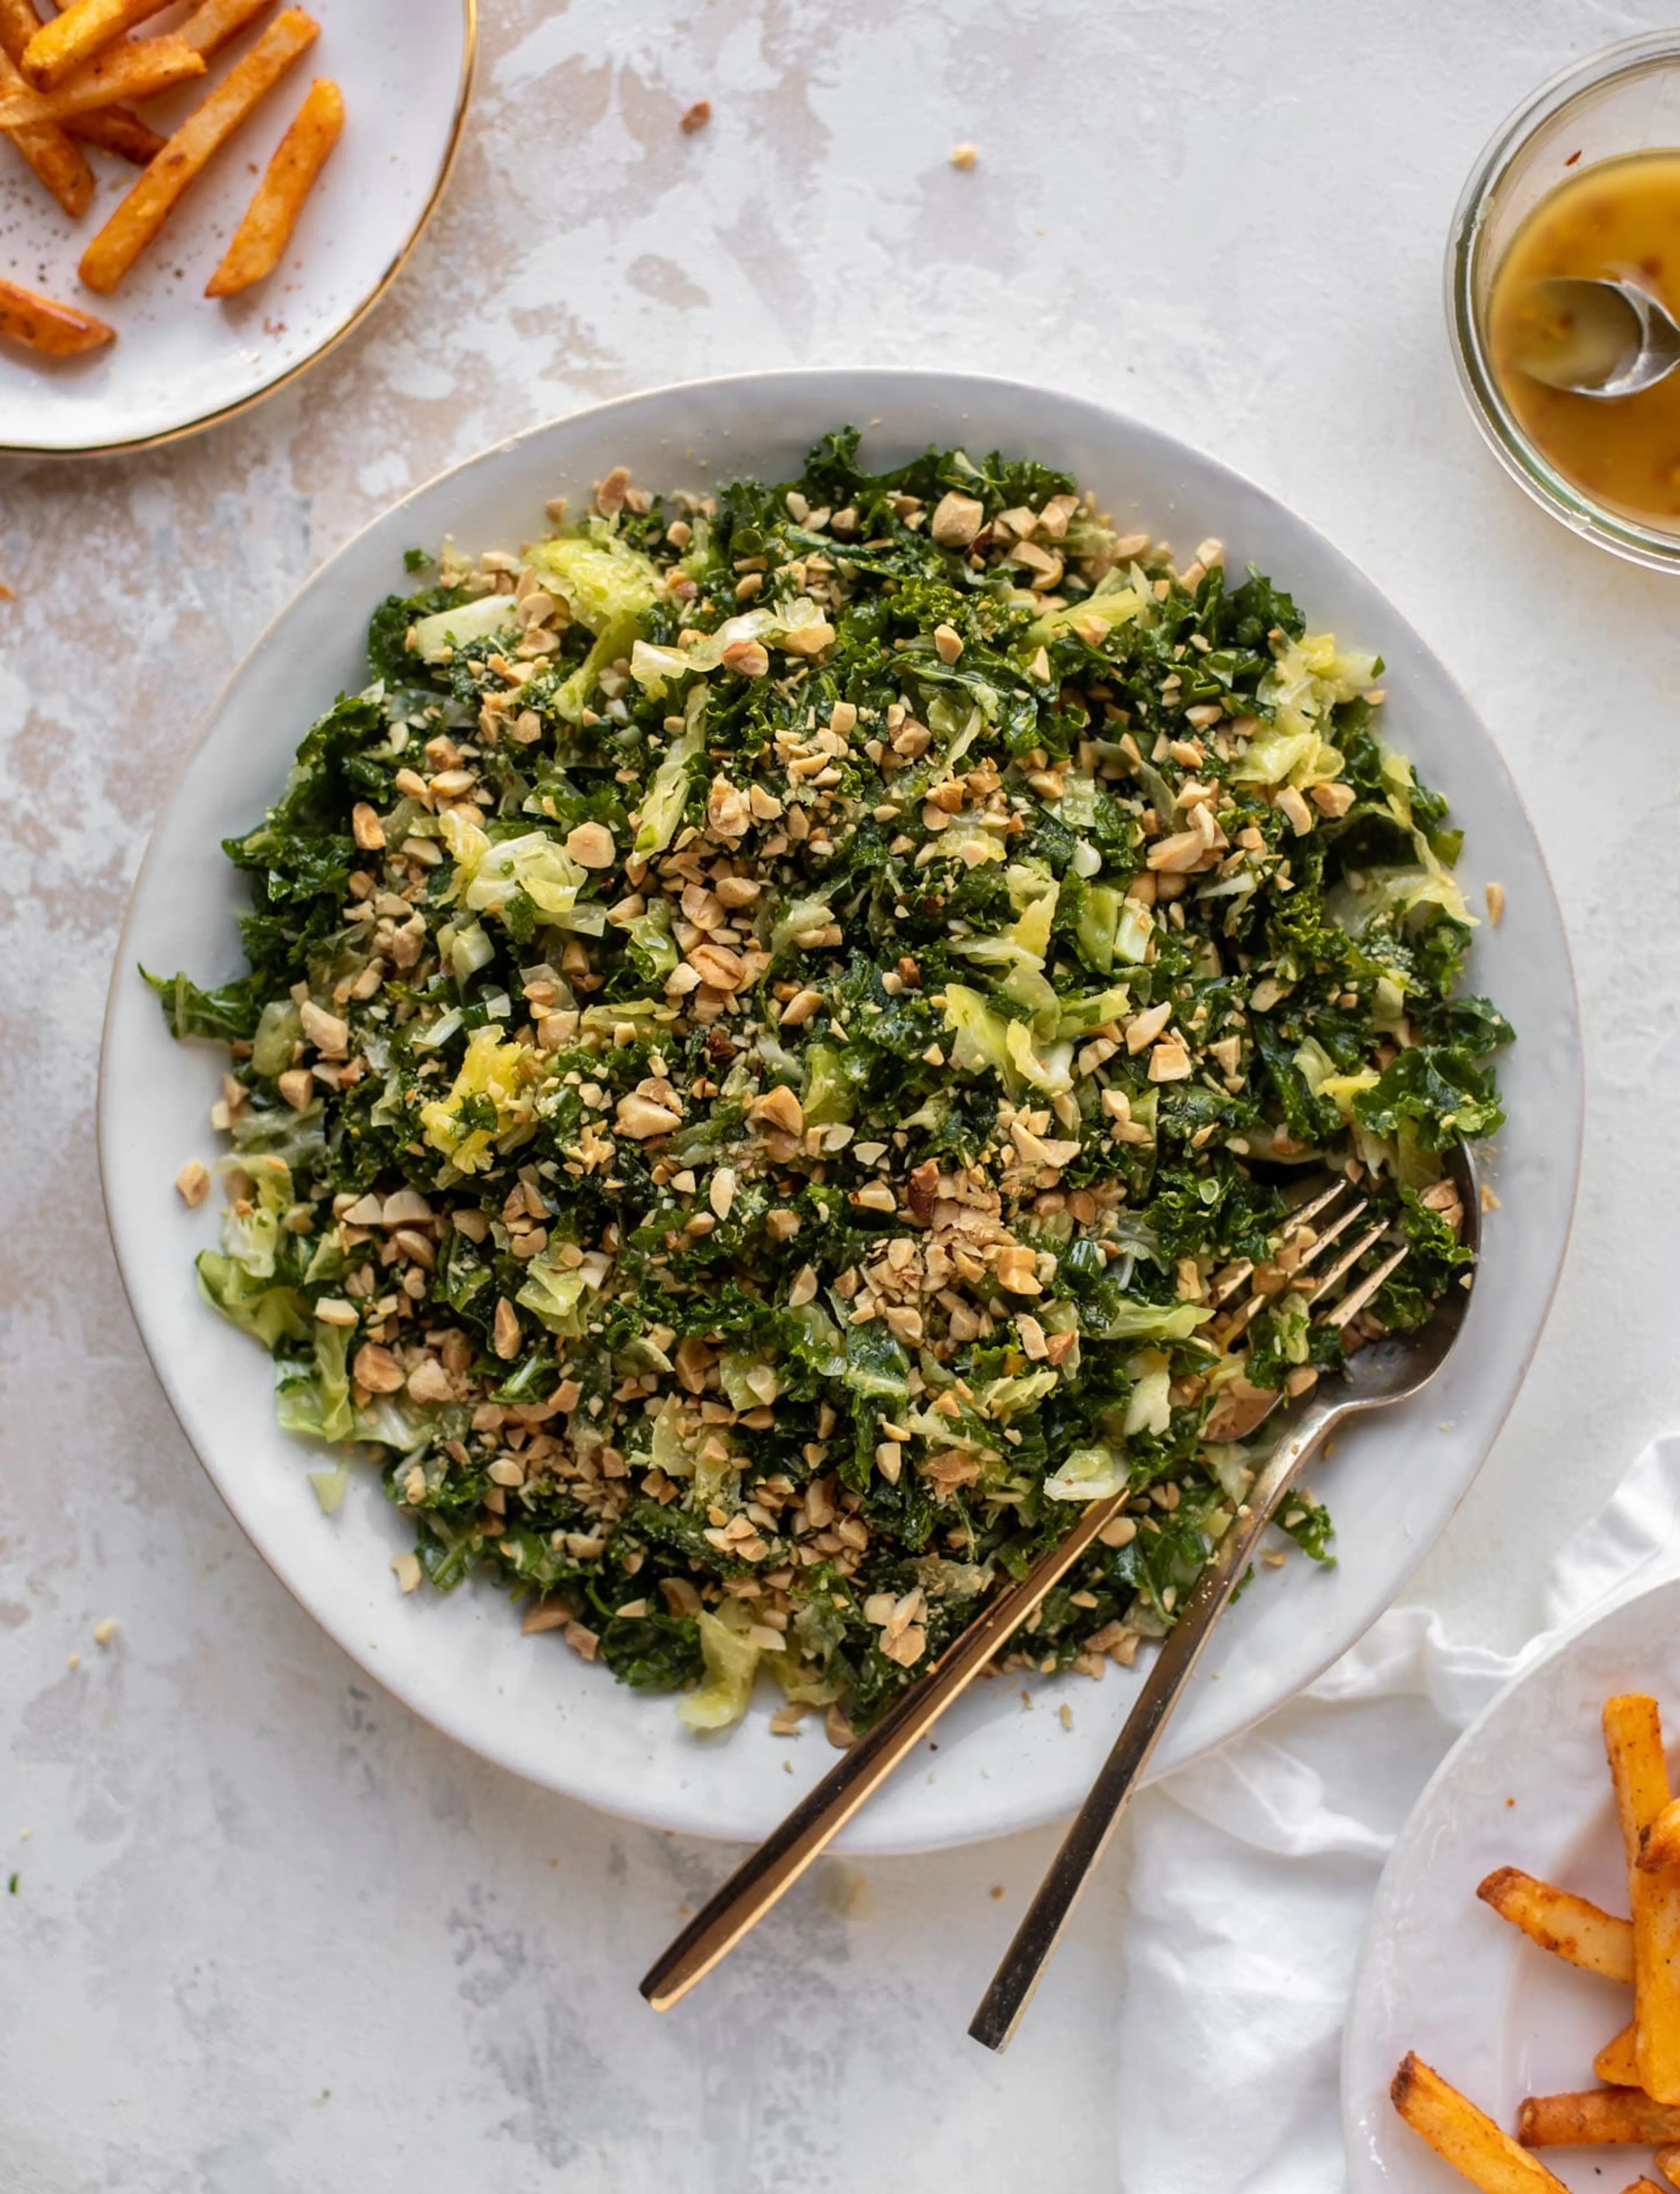 Crunchy Emerald Kale Salad with Peanut Vinaigrette